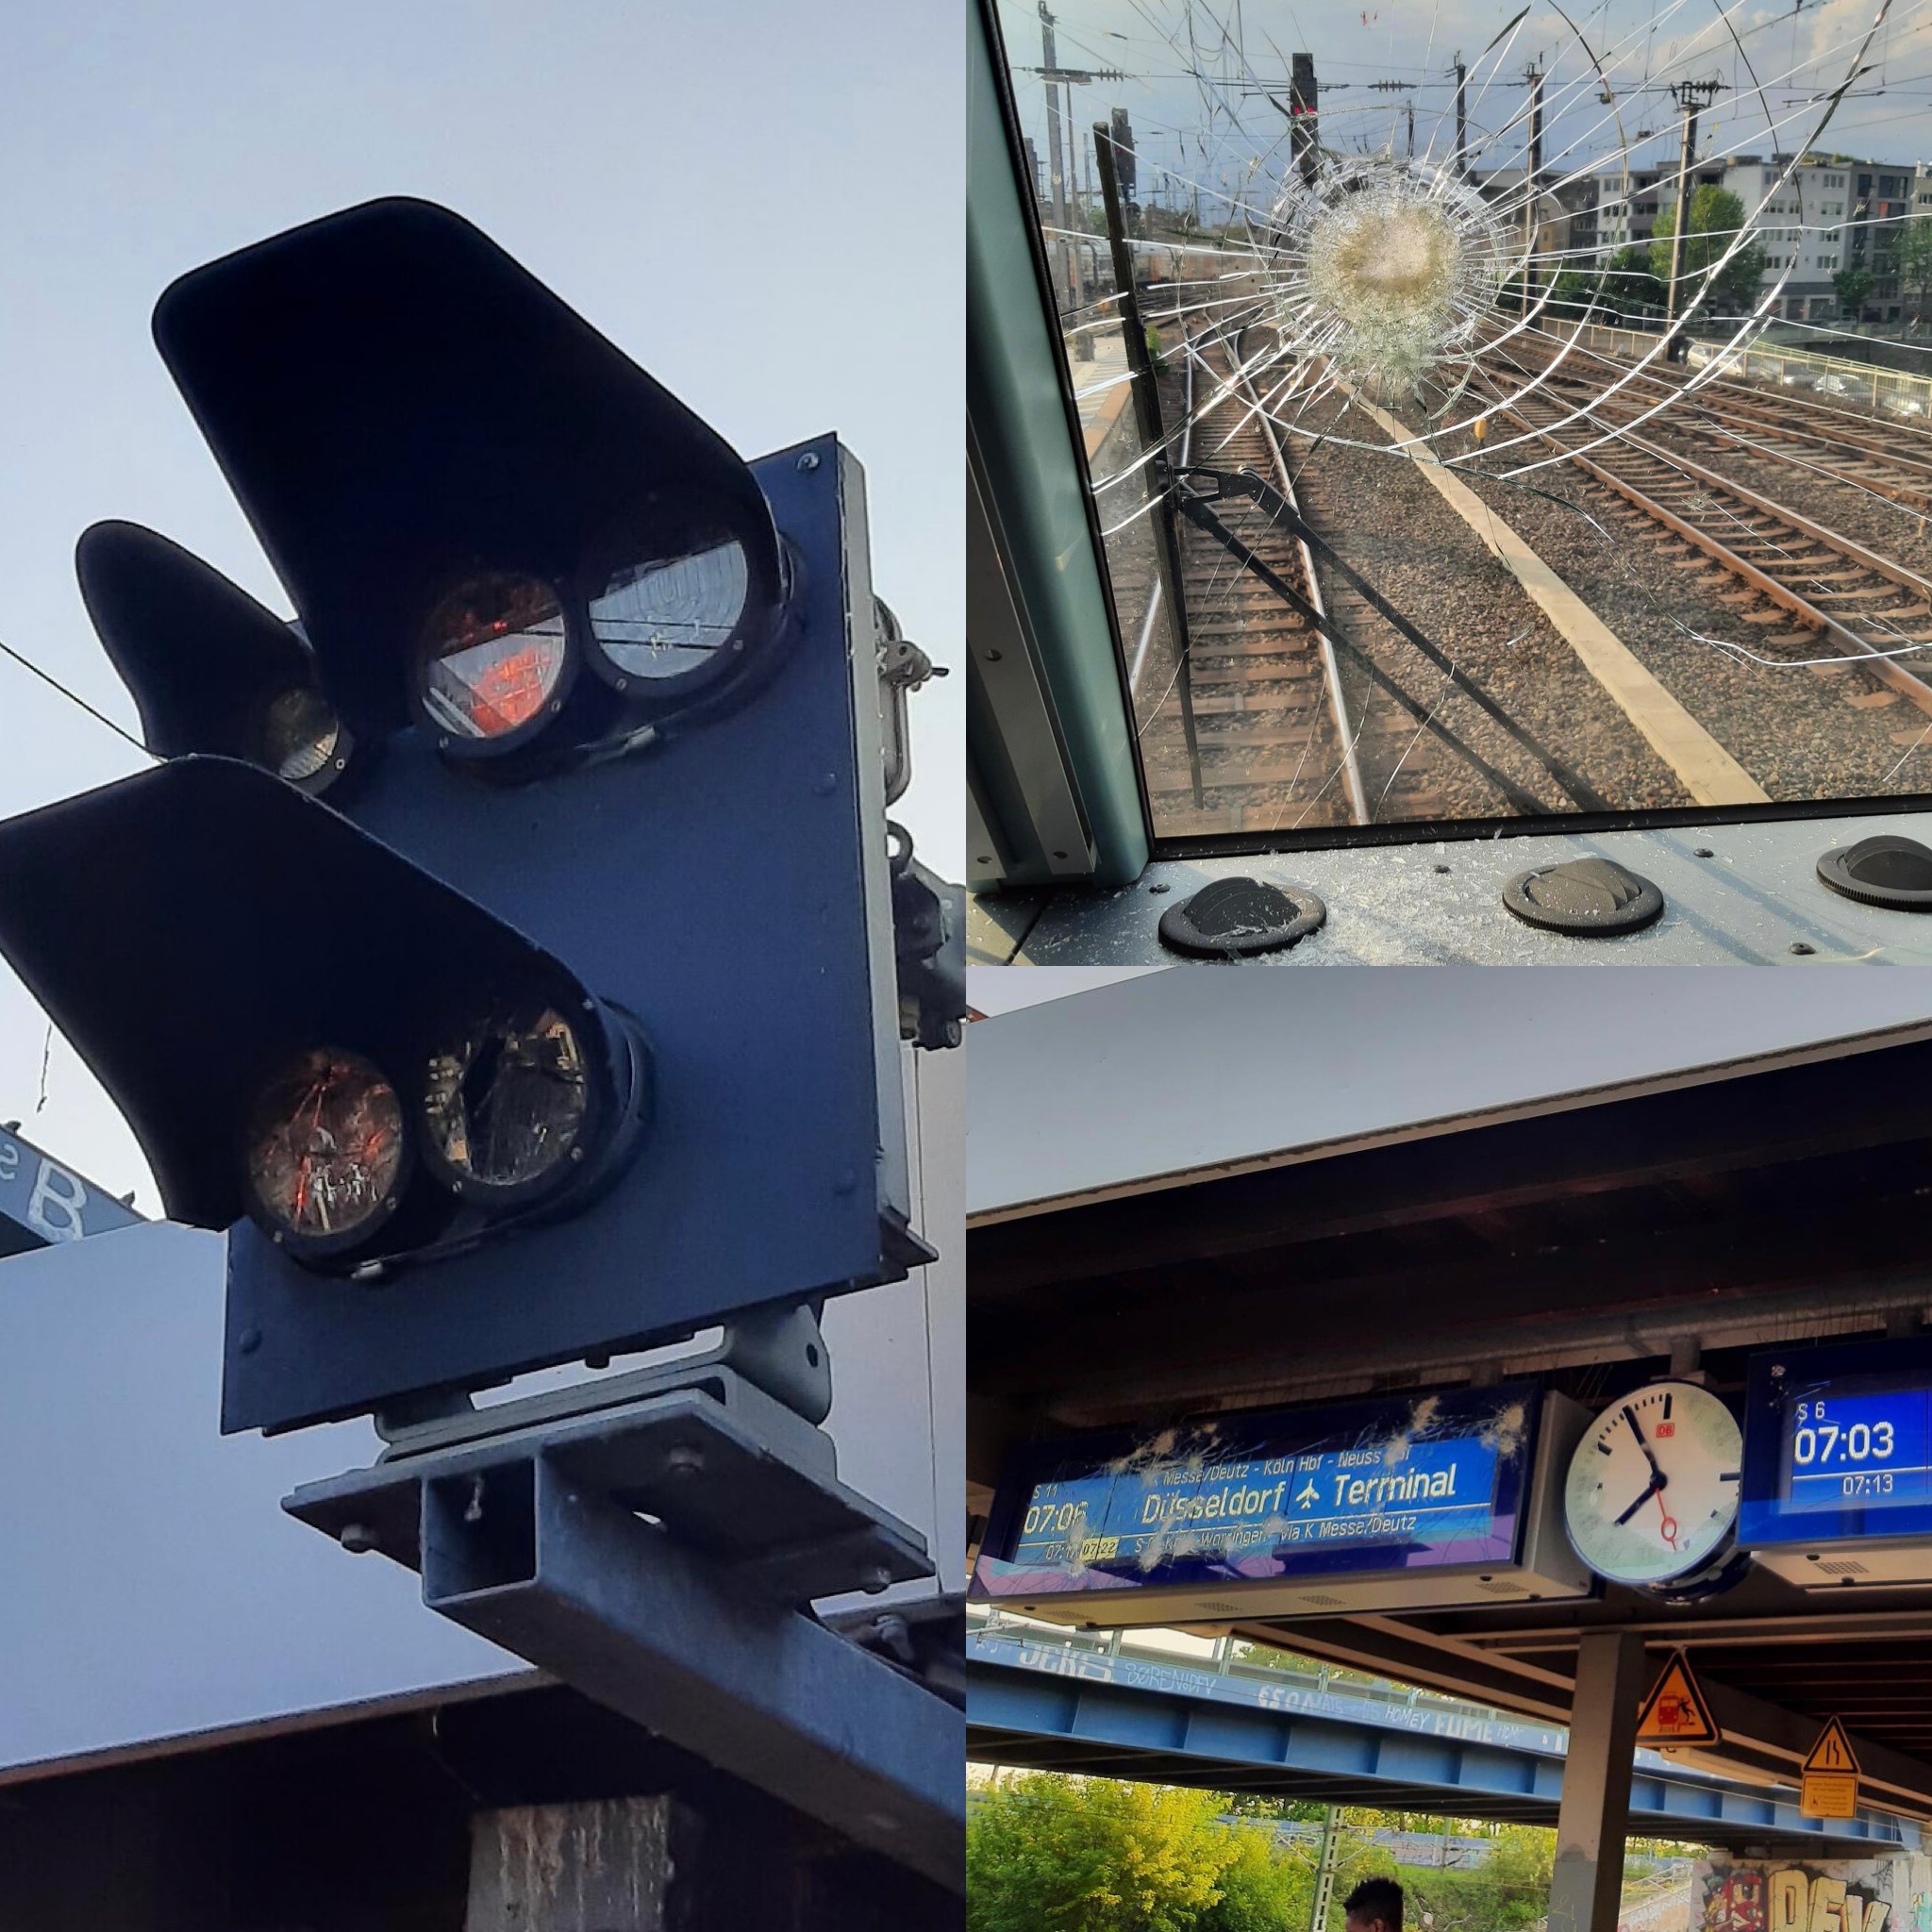 Massiver Vandalismus an Zügen und Bahnanlagen